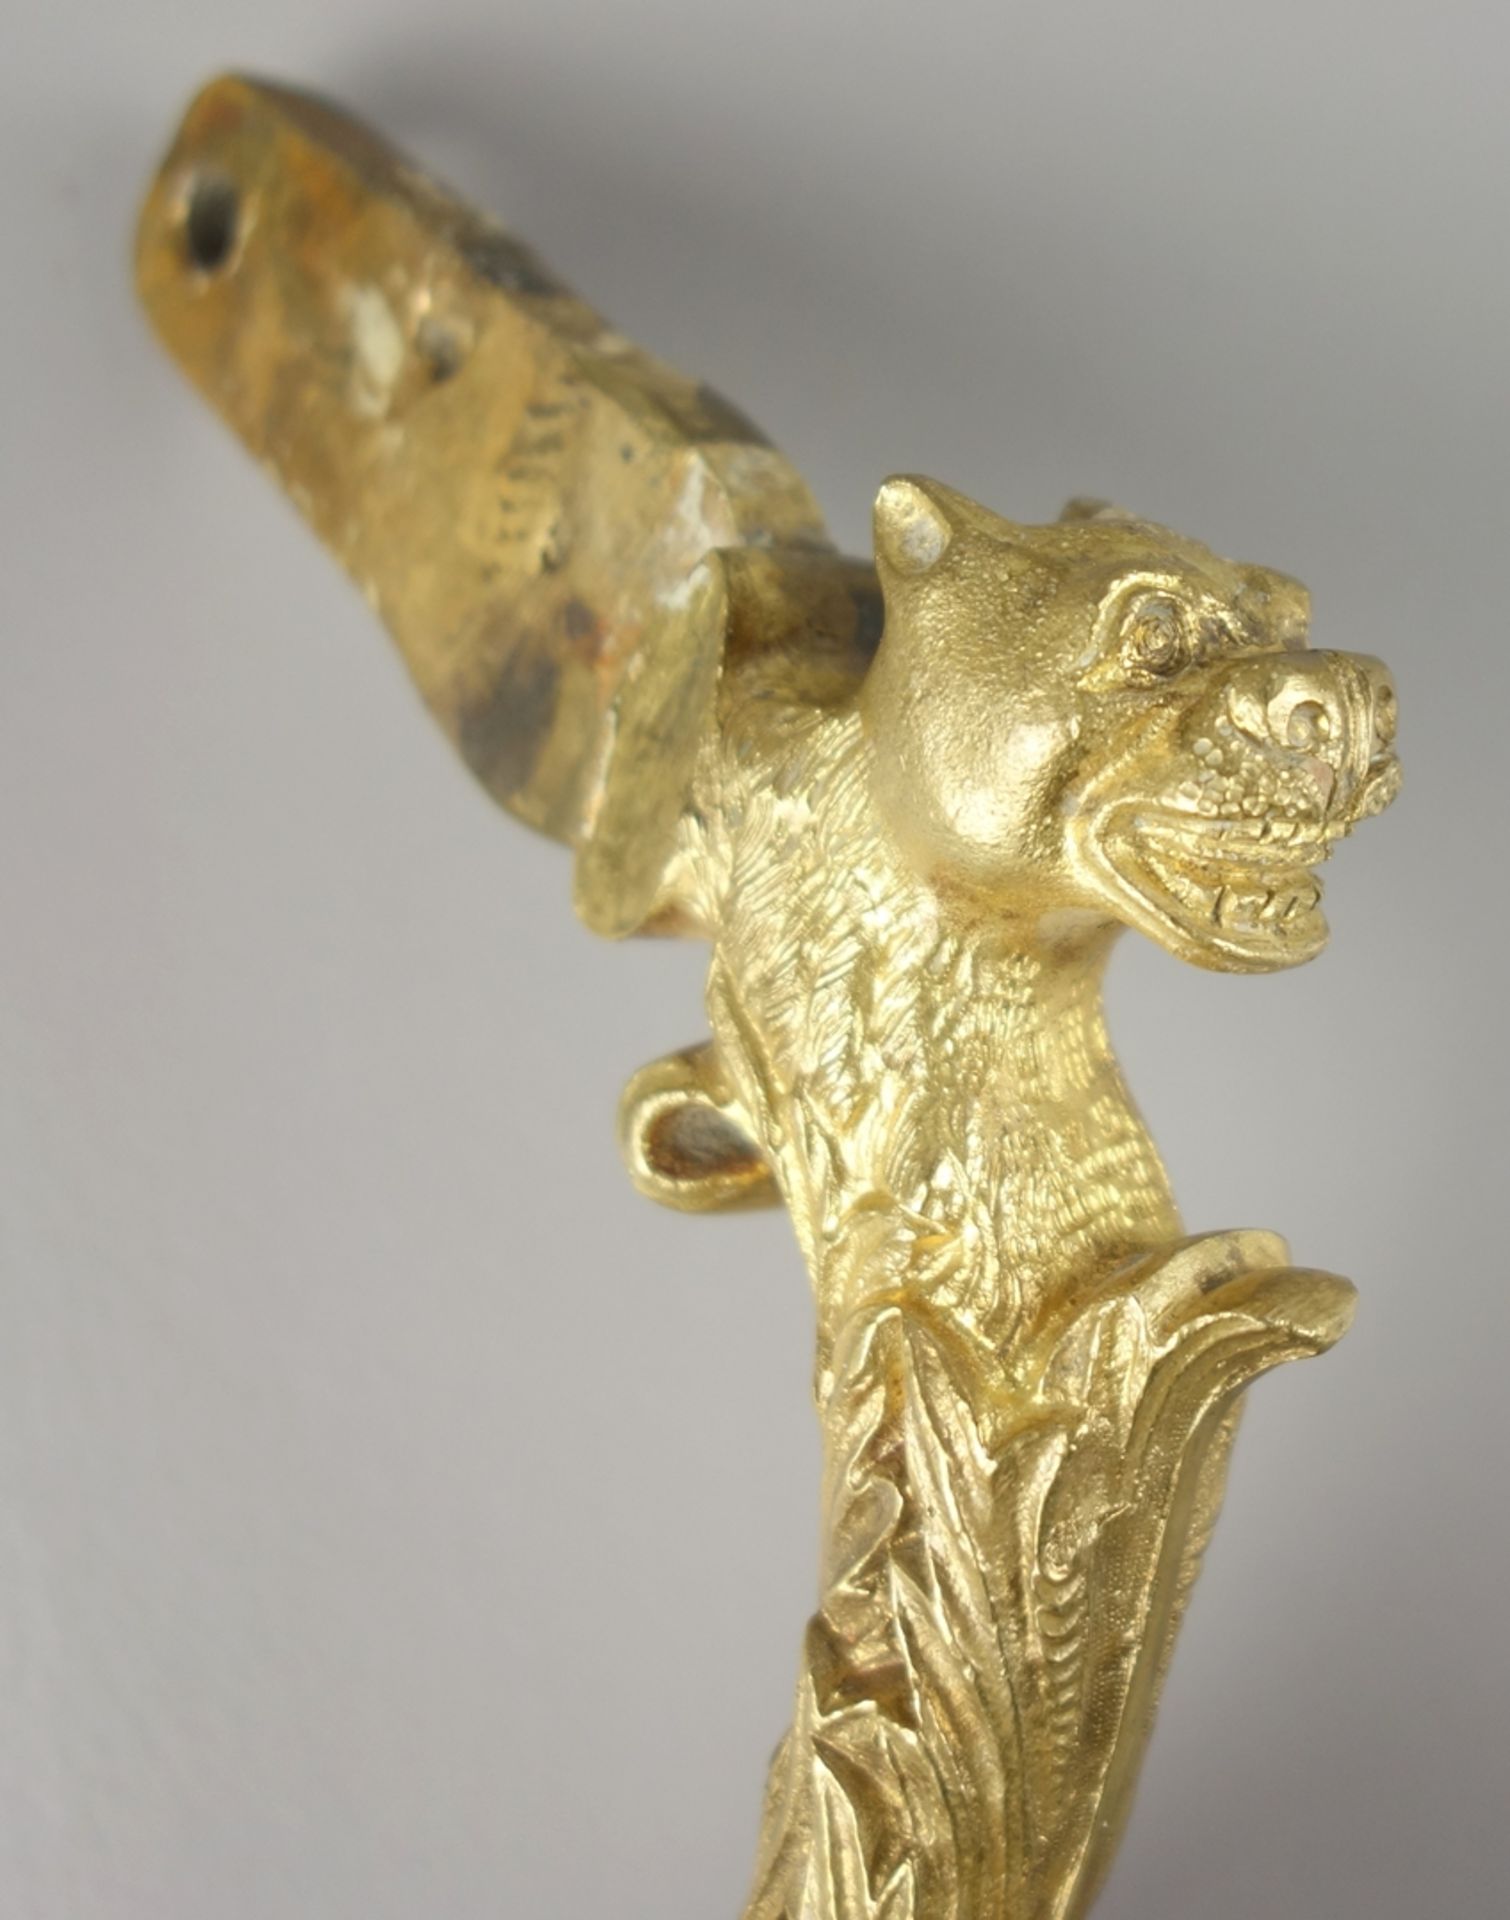 Doorknocker handle, probably 18th century, gilt bronze - Image 3 of 3